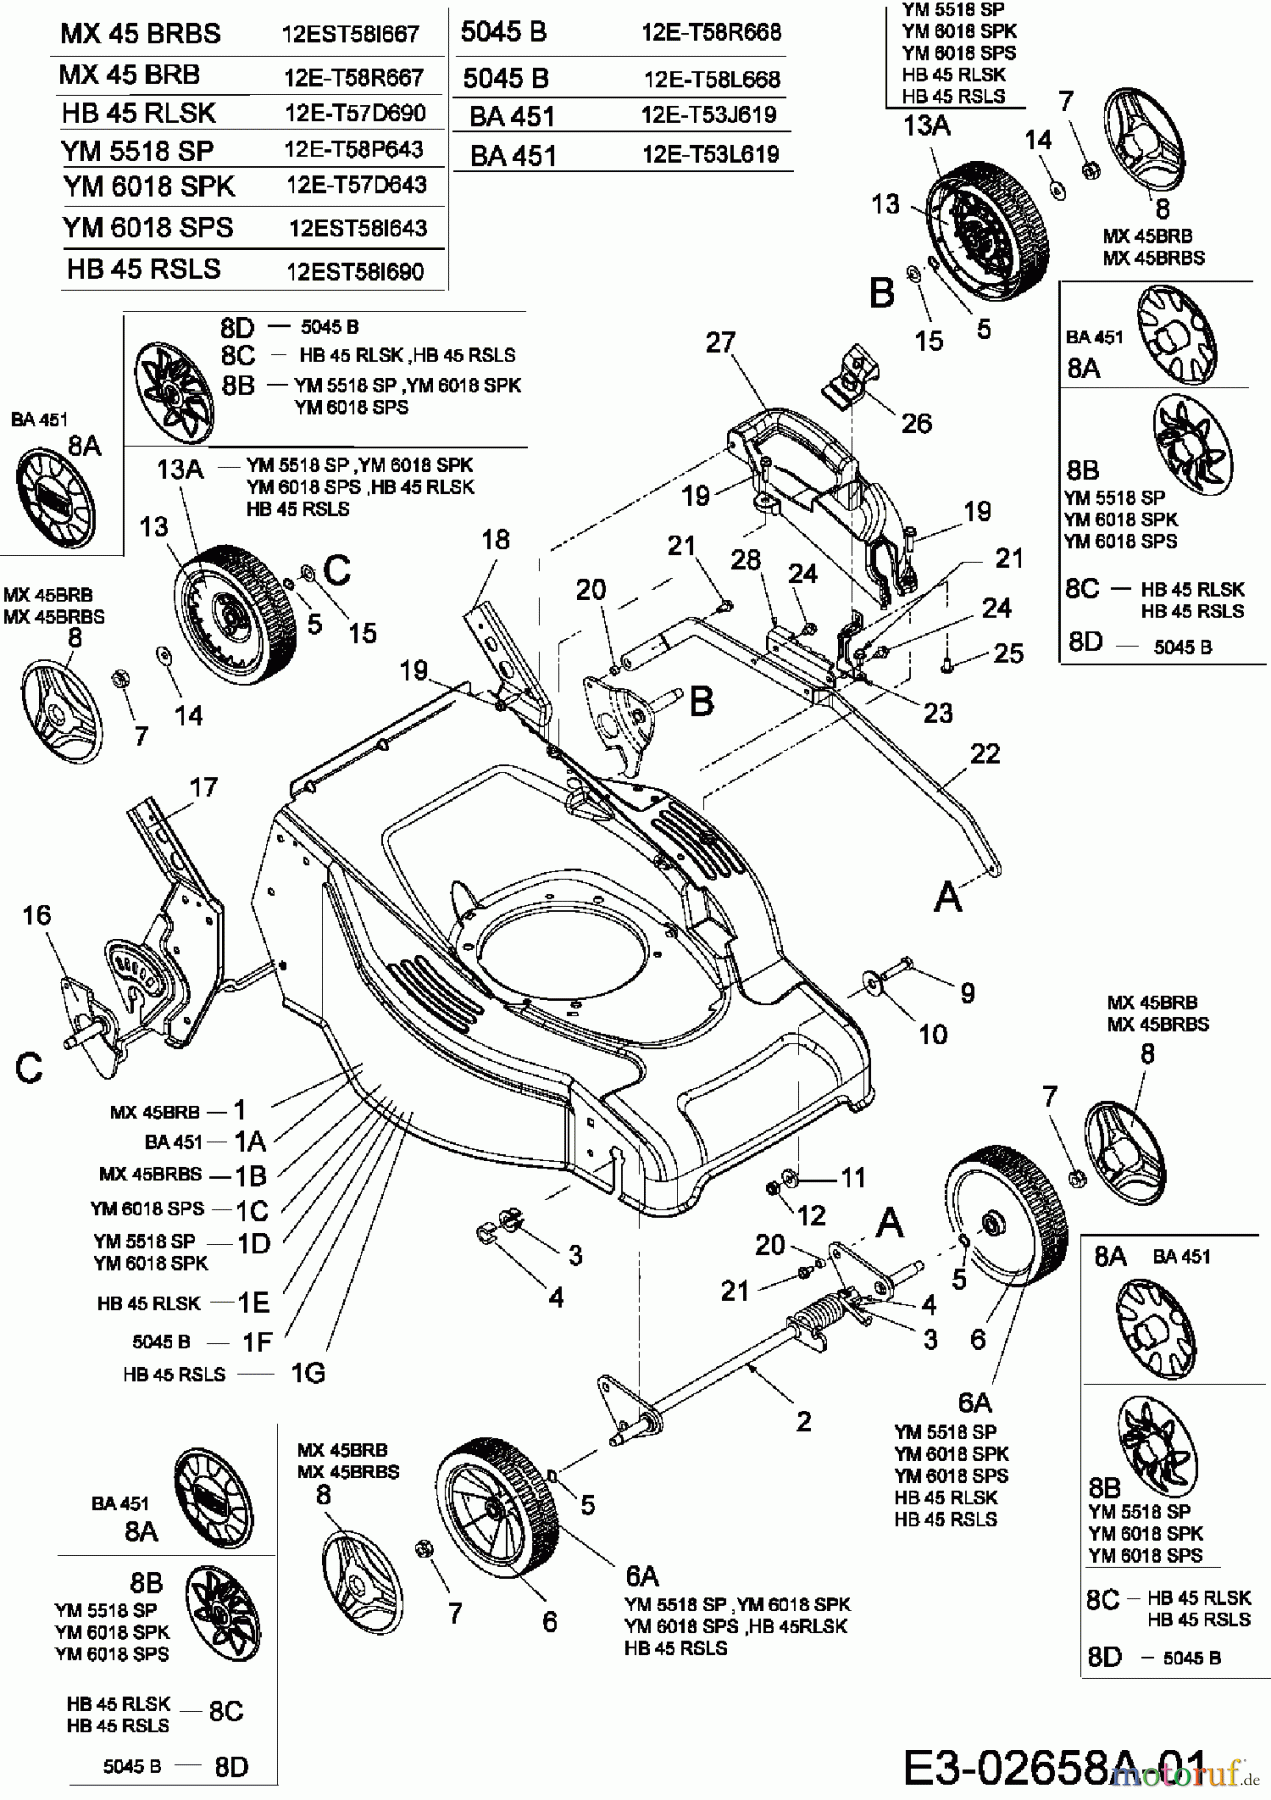  Merox Motormäher mit Antrieb MX 45 BRB 12E-T58R667  (2006) Räder, Schnitthöhenverstellung